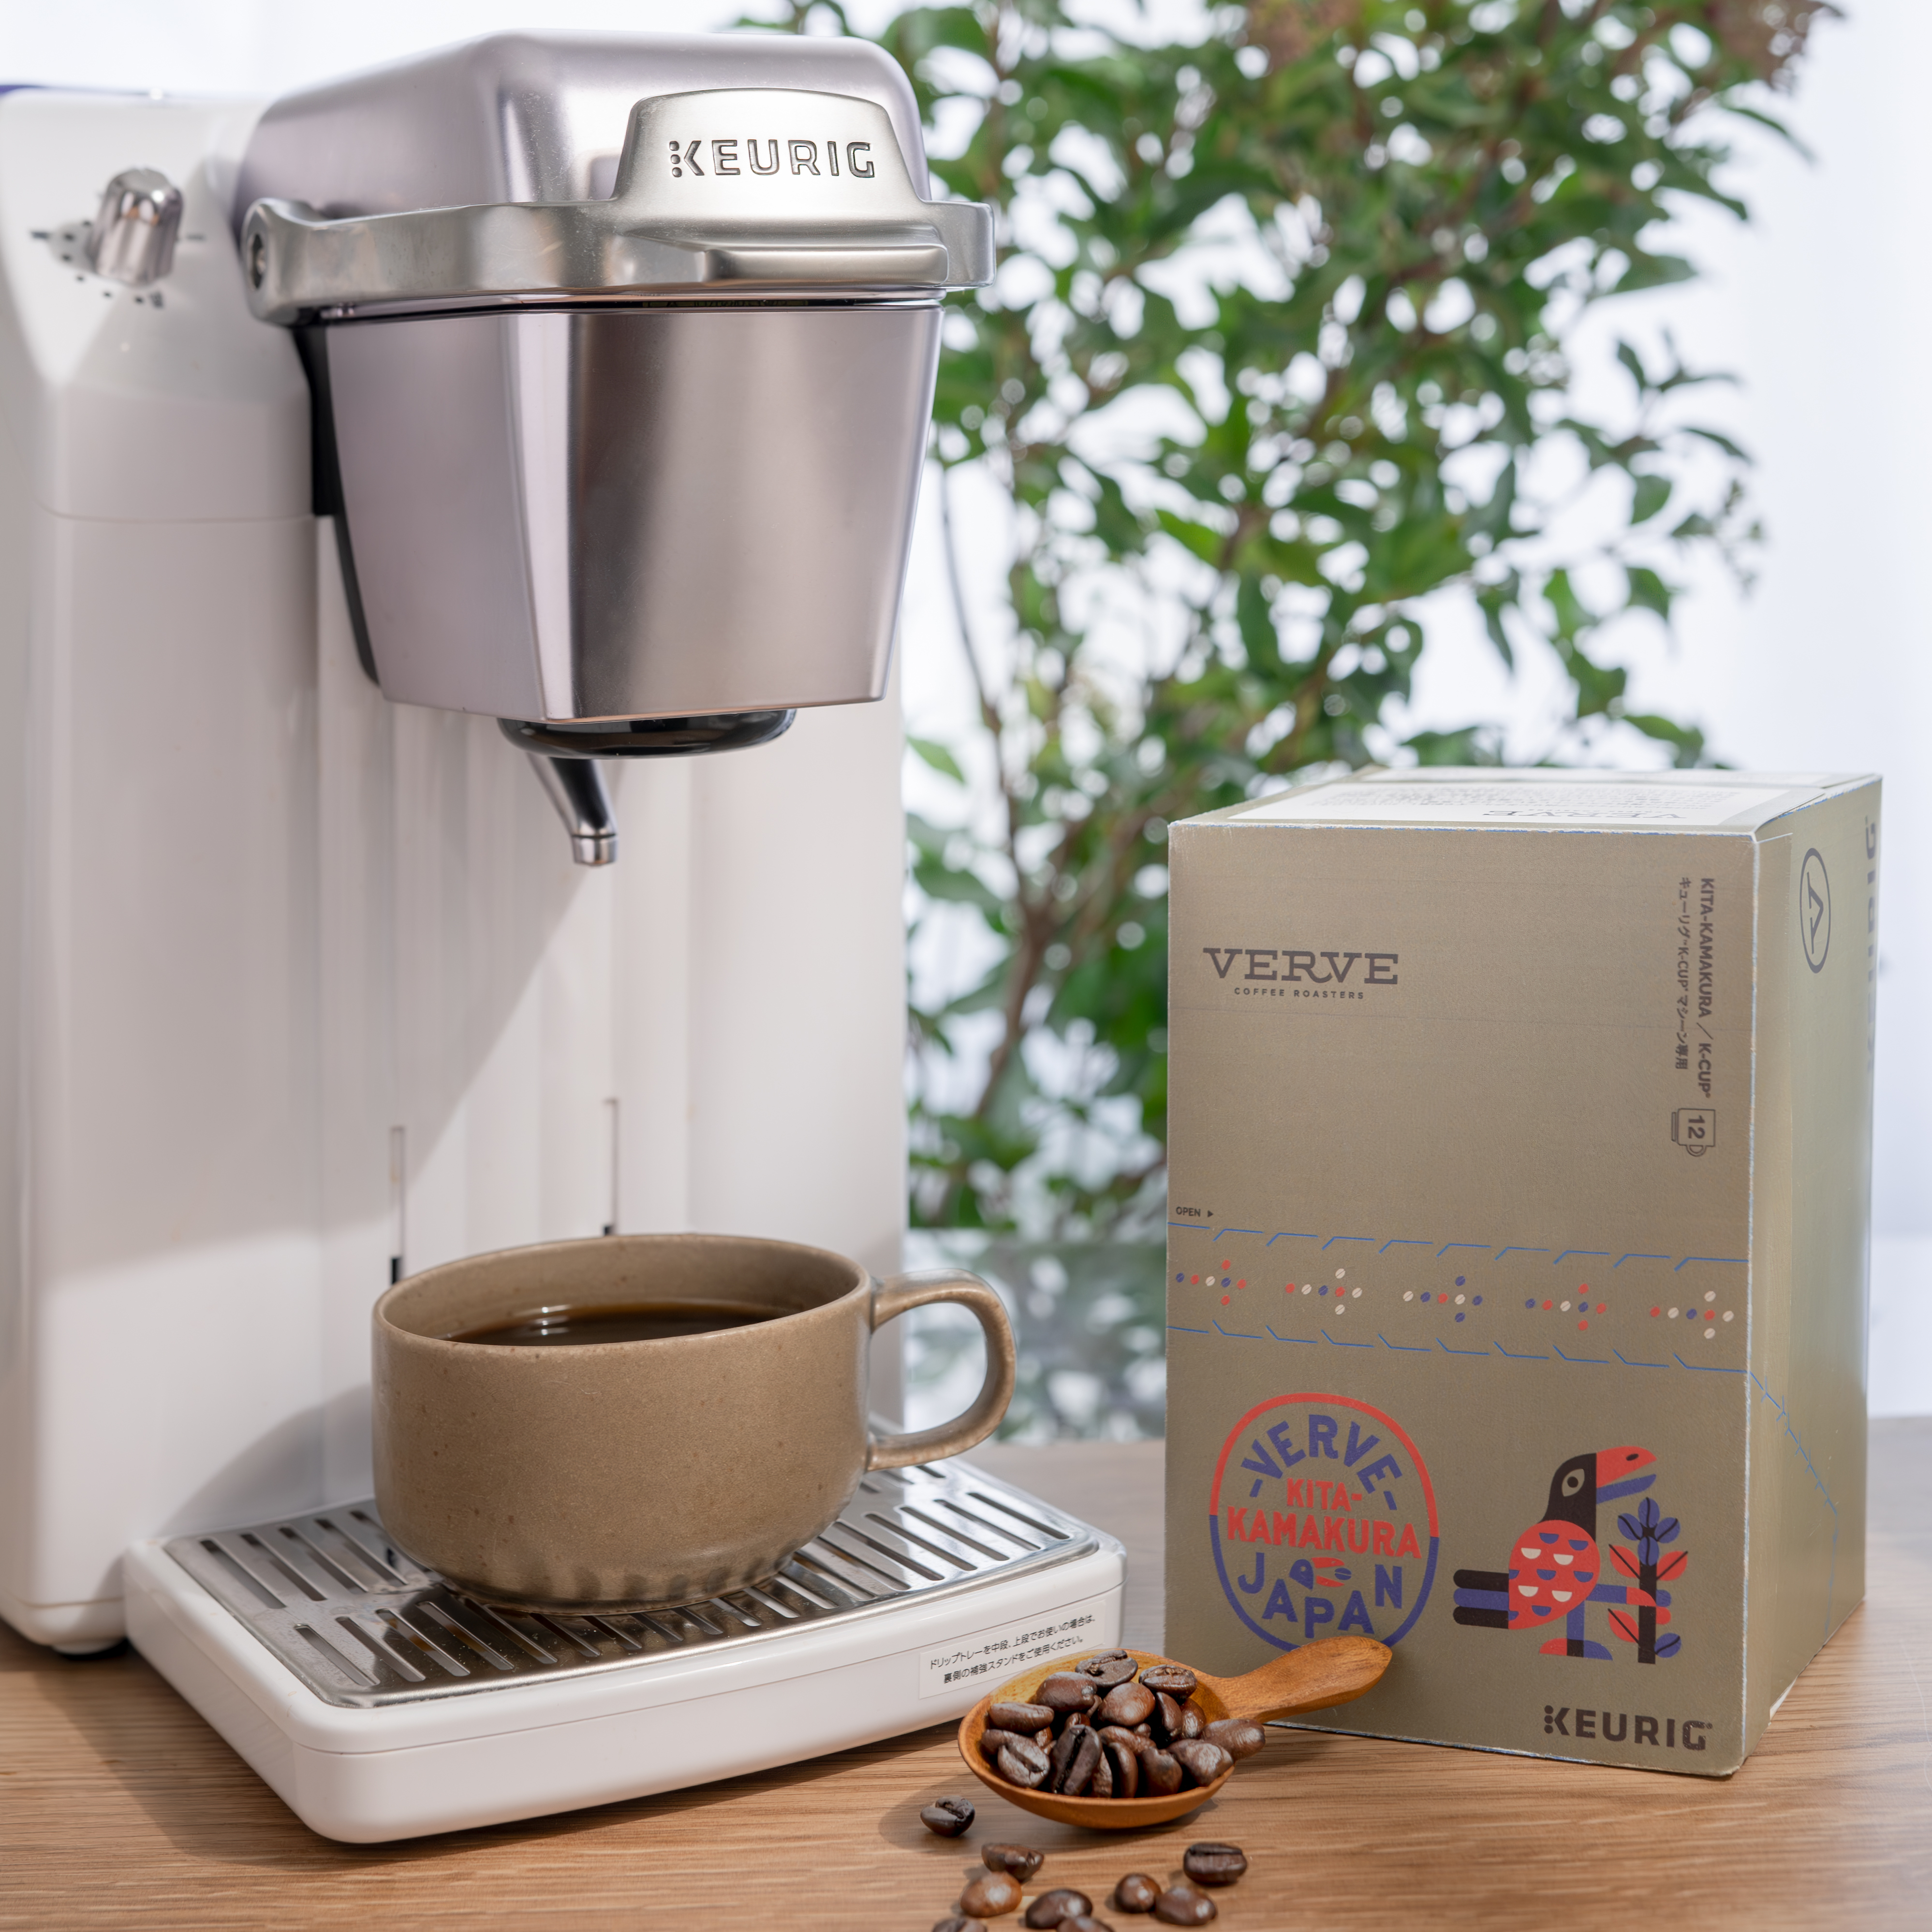 【新商品】カリフォルニア発のスペシャルティコーヒーブランド「VERVE COFFEE ROASTERS」から新商品が発売